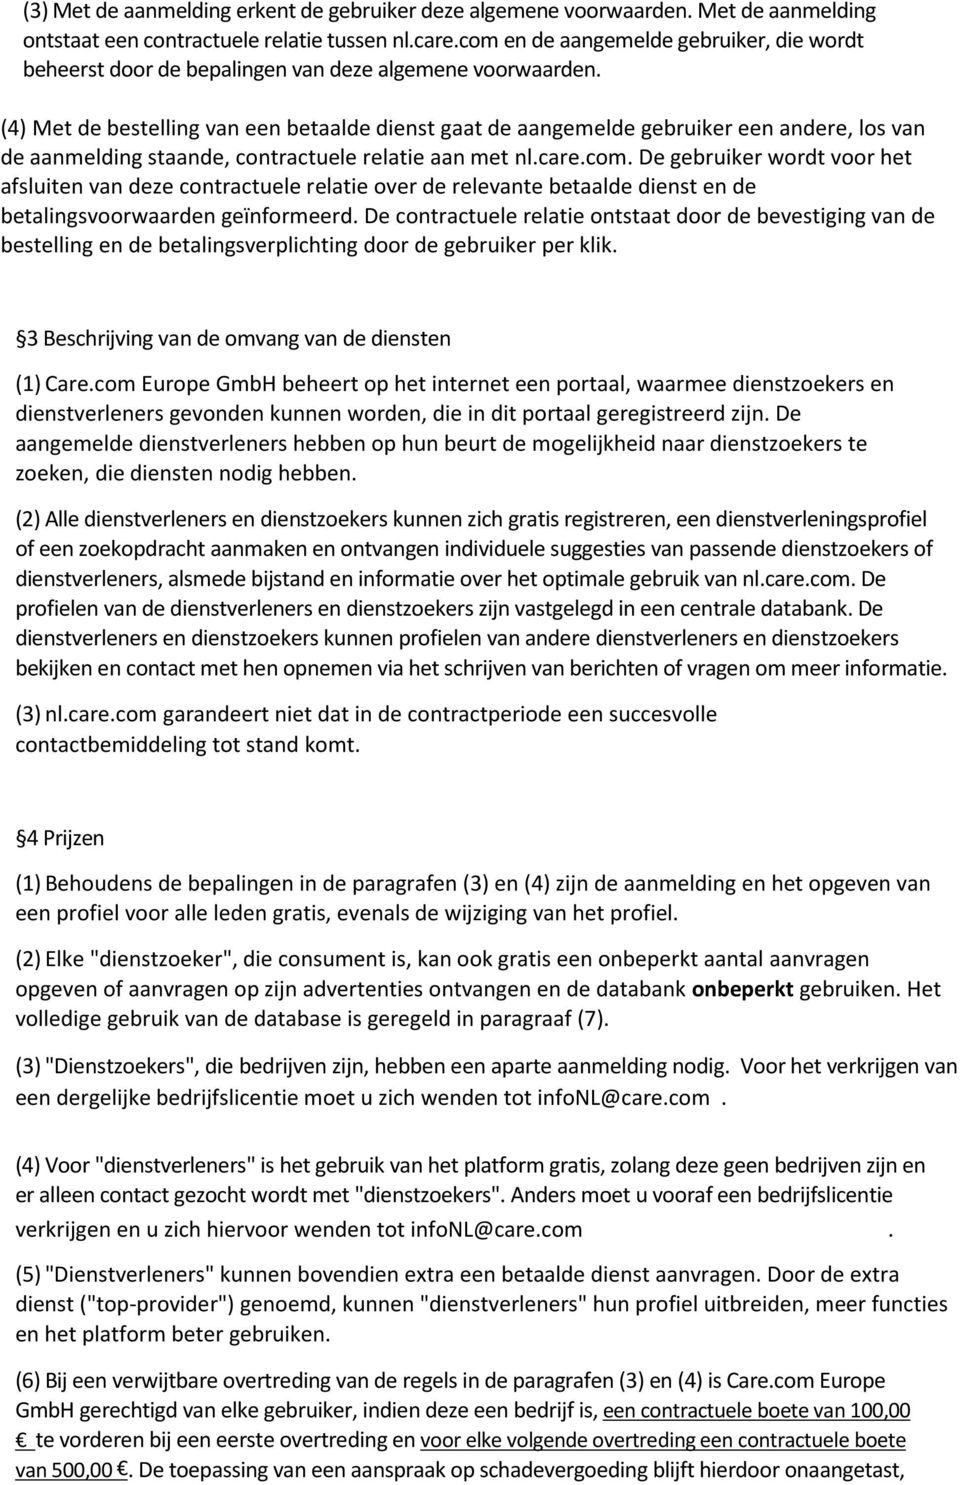 (4) Met de bestelling van een betaalde dienst gaat de aangemelde gebruiker een andere, los van de aanmelding staande, contractuele relatie aan met nl.care.com.